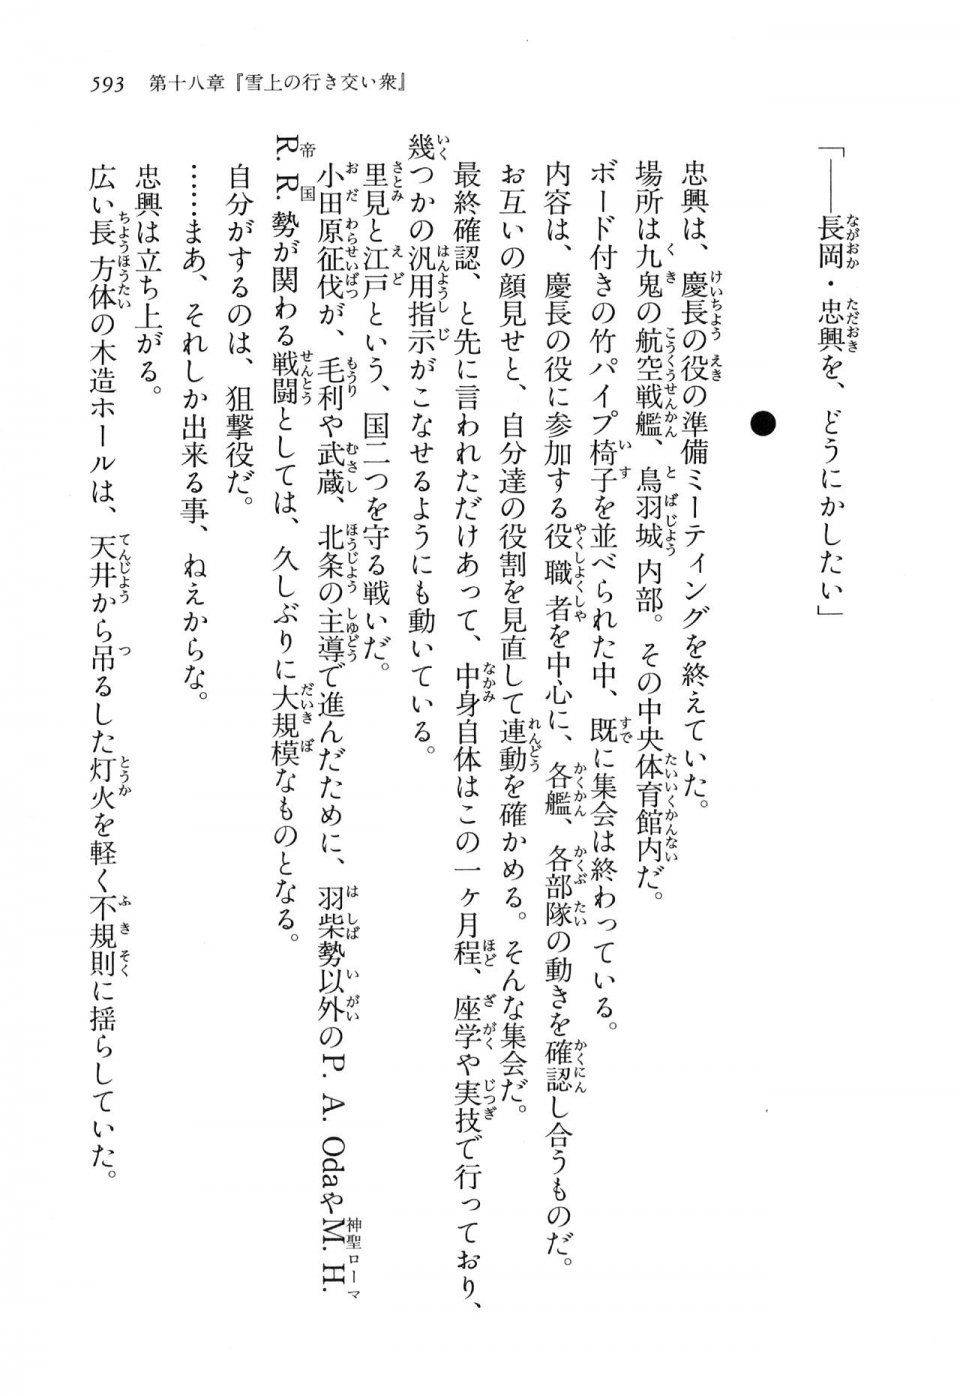 Kyoukai Senjou no Horizon LN Vol 16(7A) - Photo #593